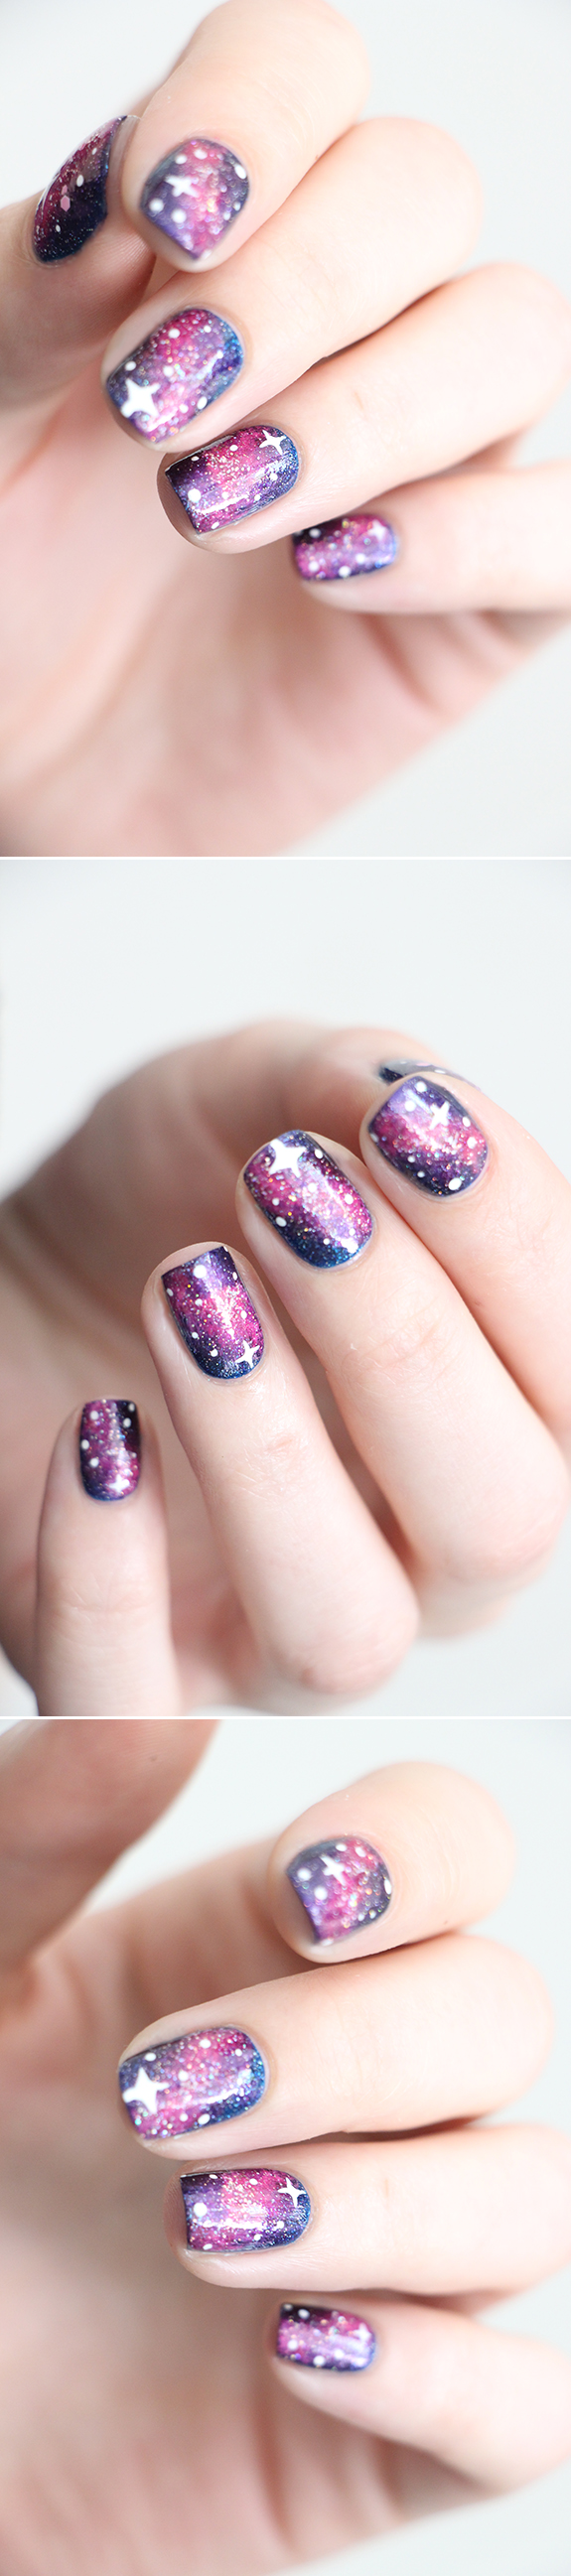 galaxy-nails-2